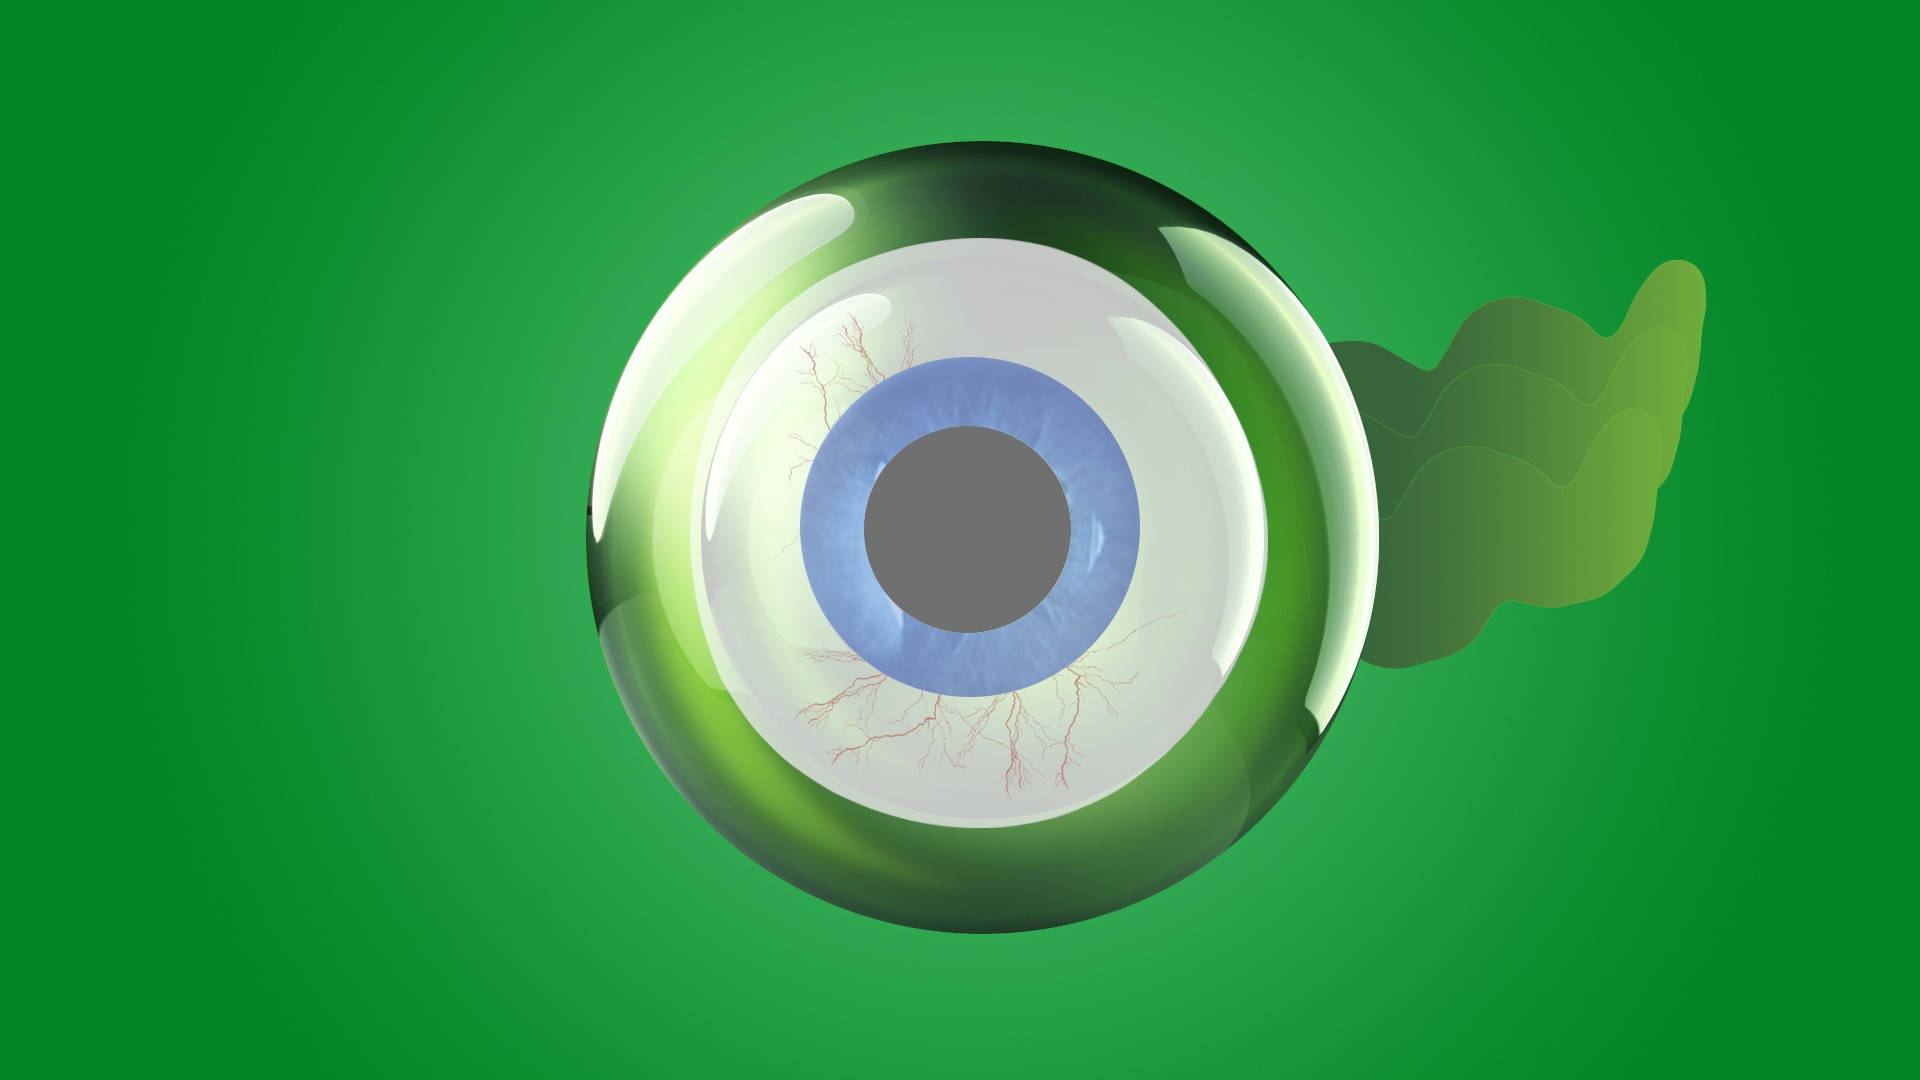 Jacksepticeyeist Ein Beliebter Youtuber Und Seine Markenzeichen Sind Sein Grünes Auge Und Sein Charakteristisches Logo, Das Als 